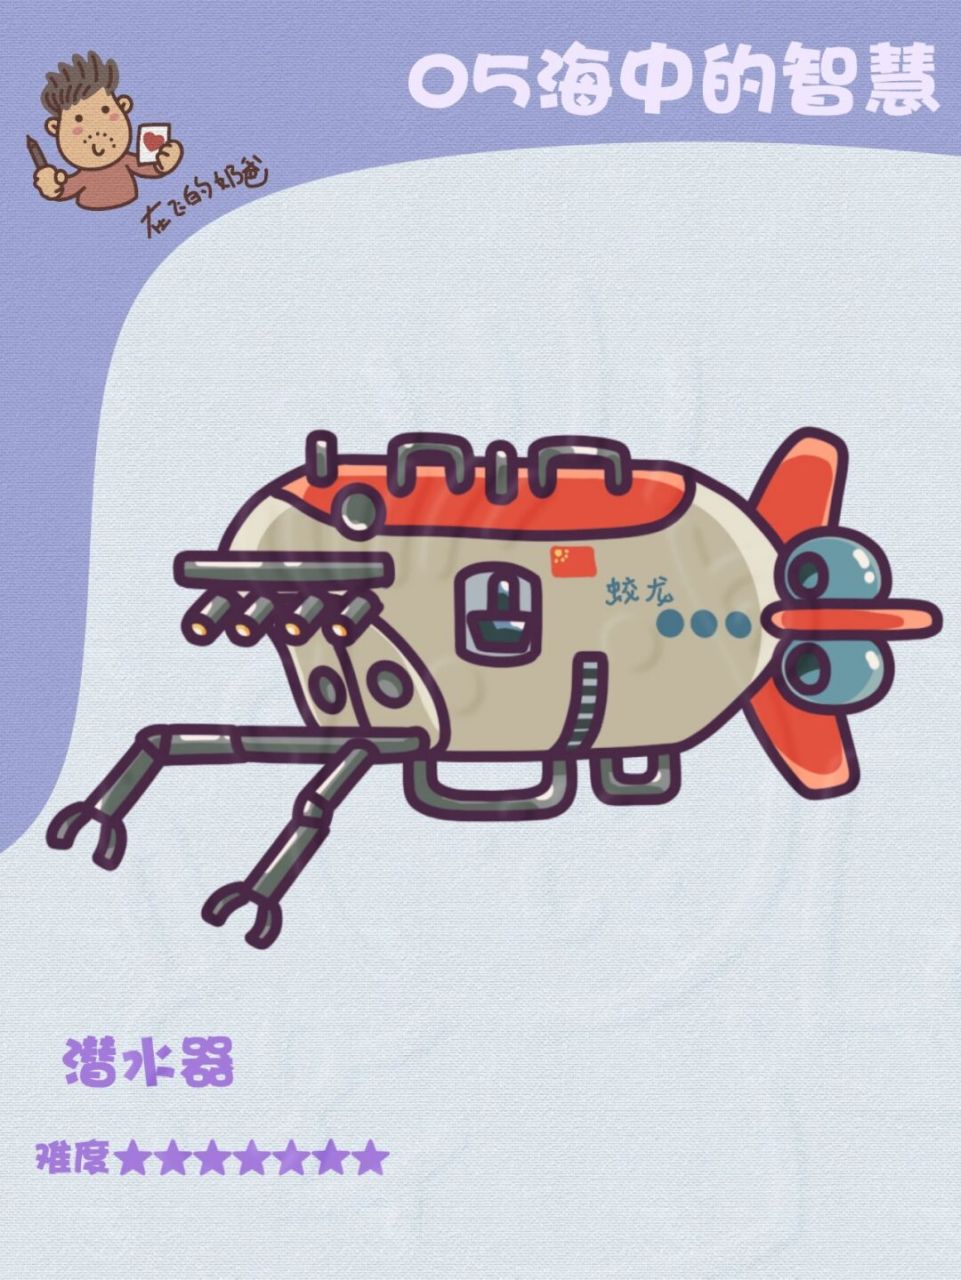 潜水器 简笔画 蛟龙号潜水器,国之重器,喜欢机械军事的小伙伴可以尝试